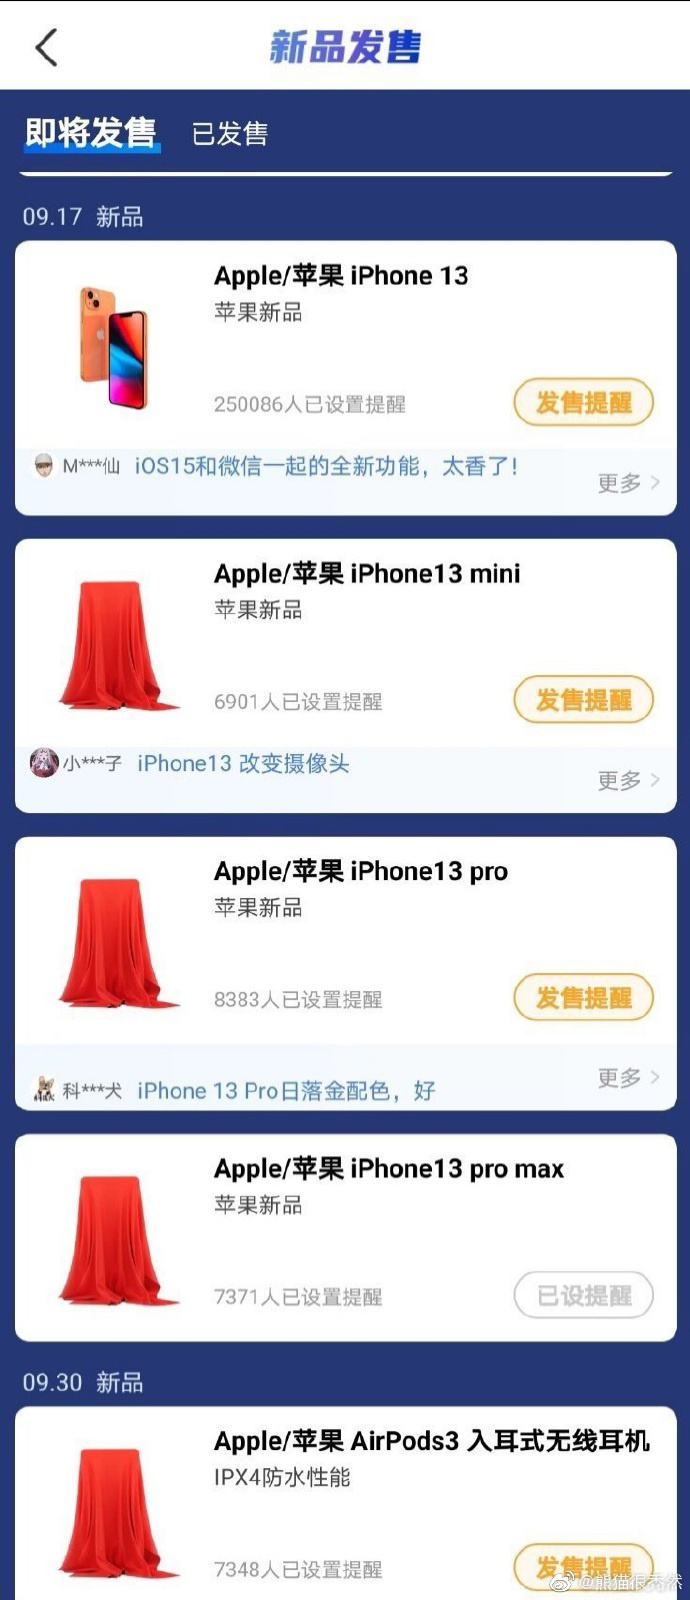 Menciones al nuevo iPhone 13 con lanzamiento el 17 de septiembre